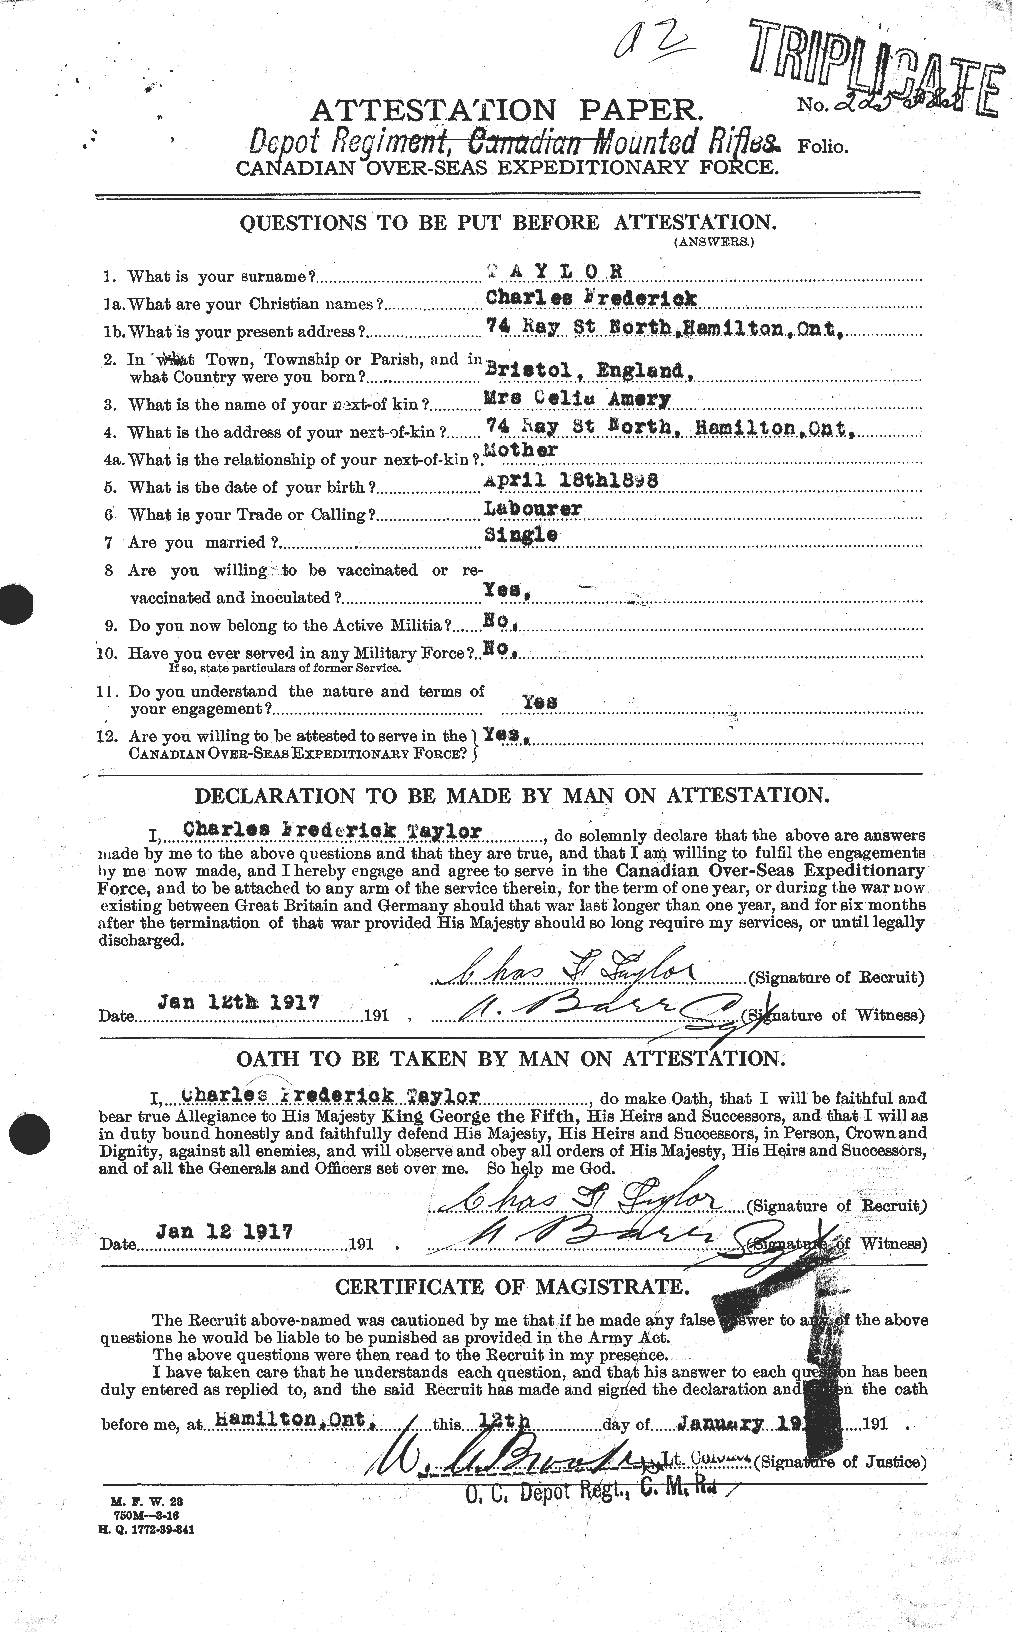 Dossiers du Personnel de la Première Guerre mondiale - CEC 626843a